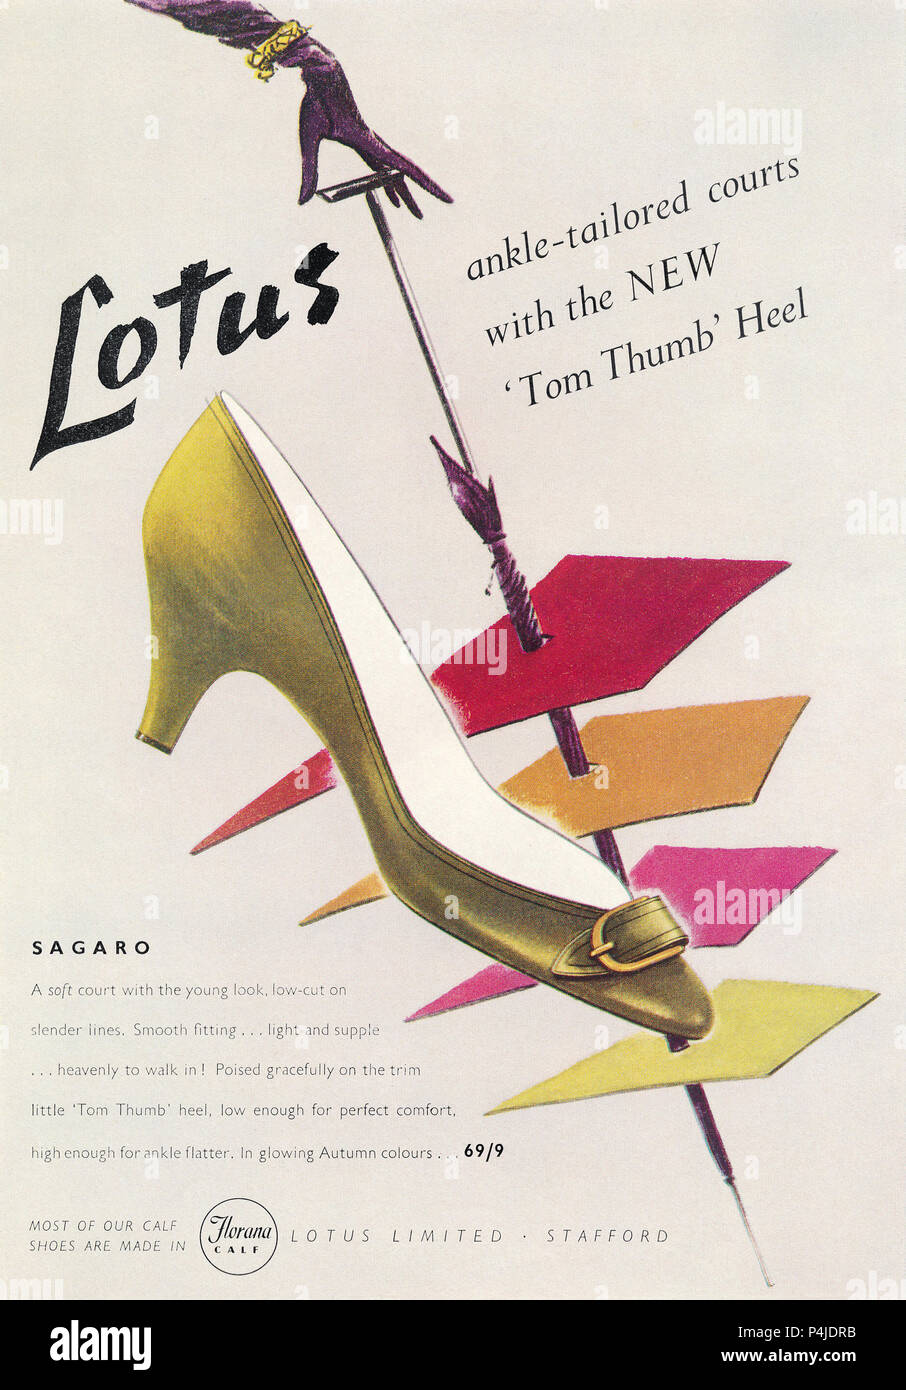 1955 britischen Werbung für Lotus Schuhe Stockfotografie - Alamy